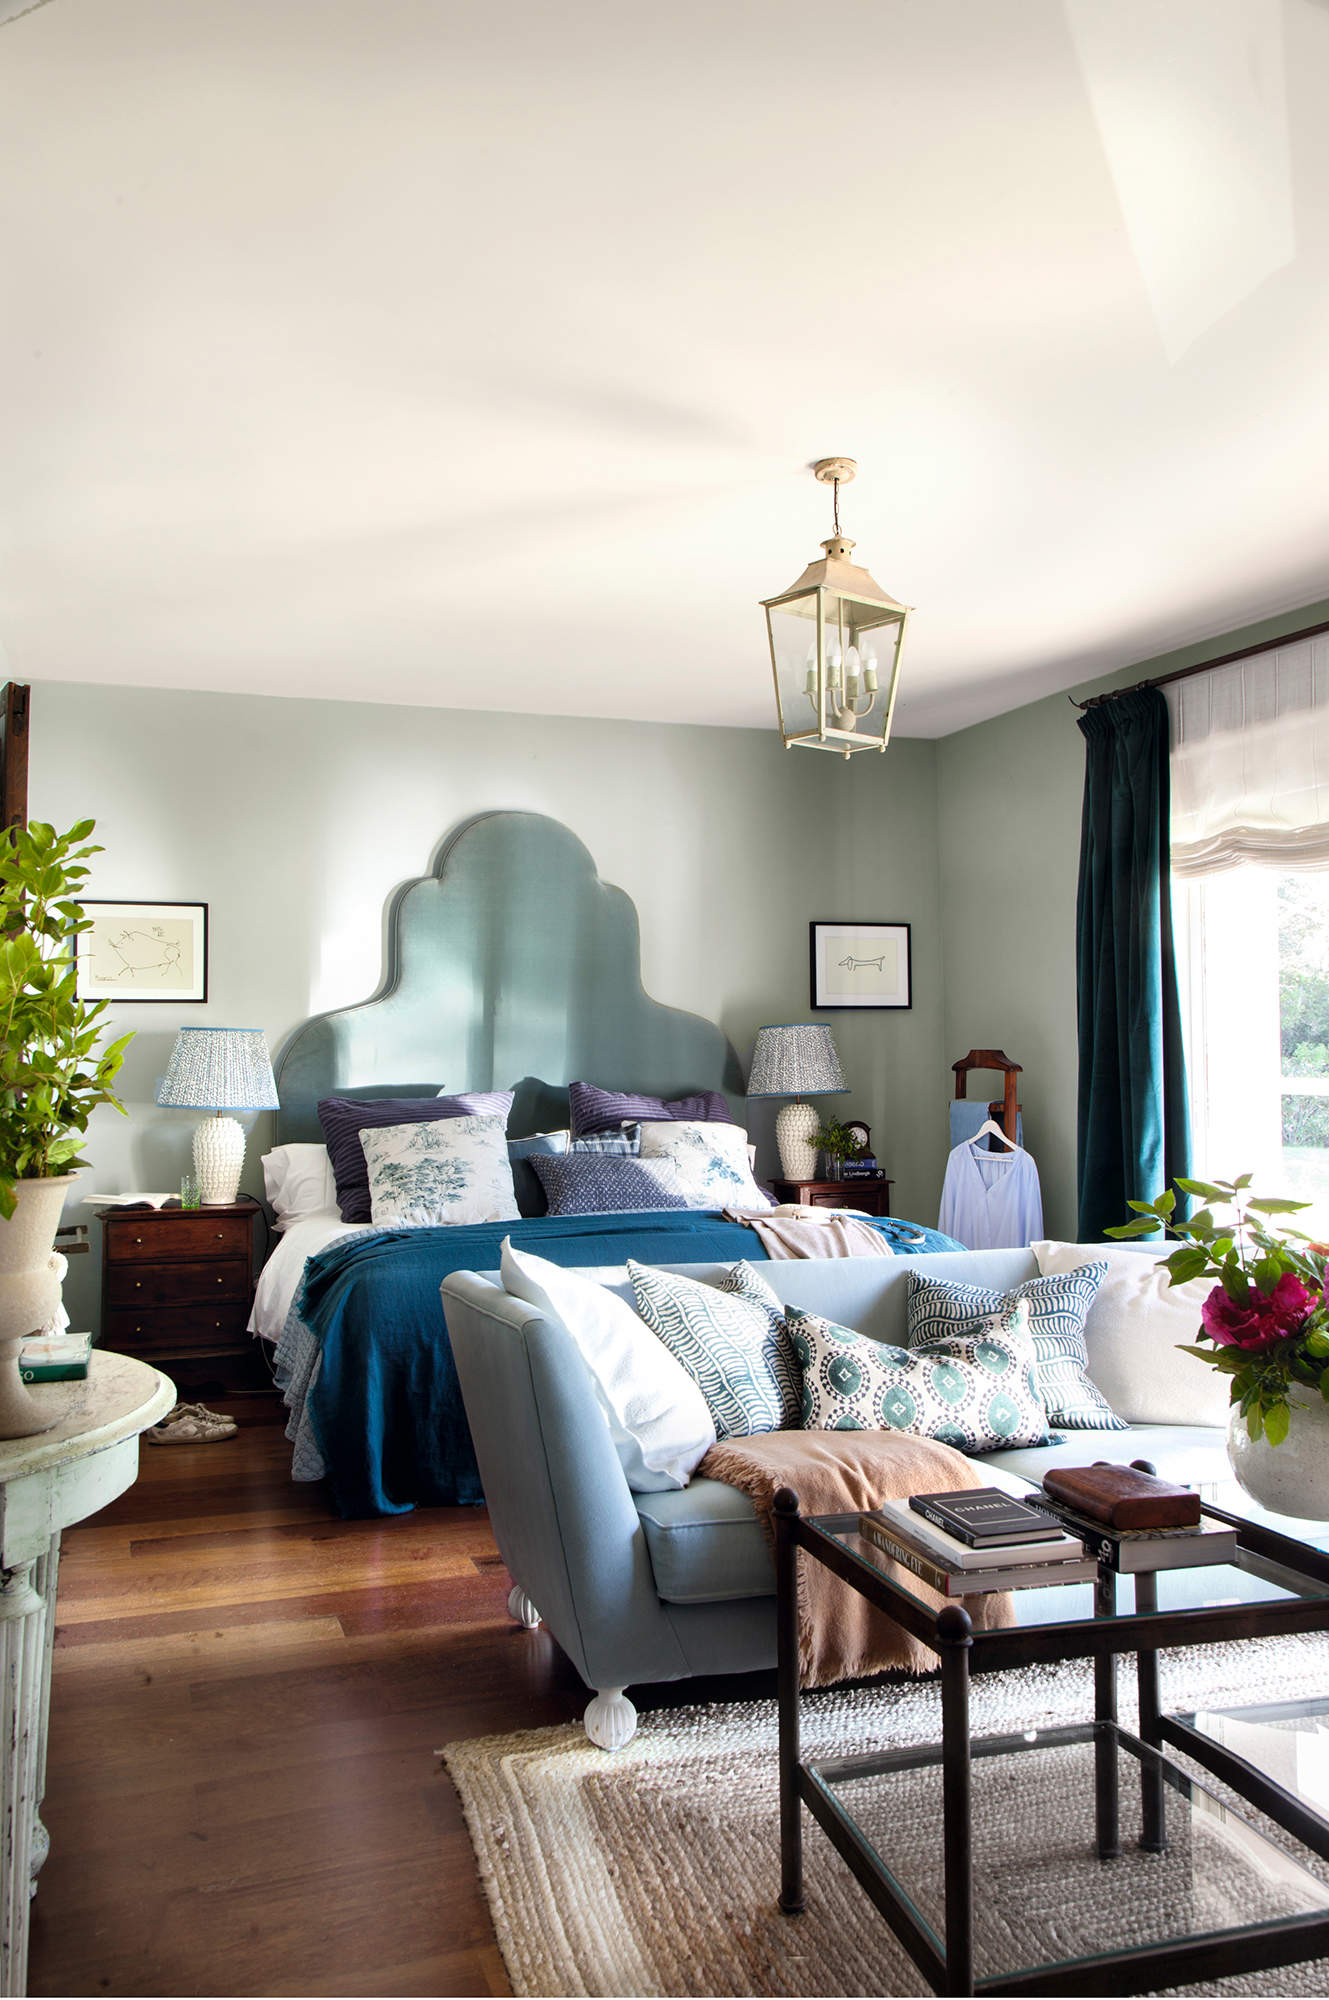 Dormitorio con cabecero ondulado en verde y sofá-diván estilo Luis XVI.